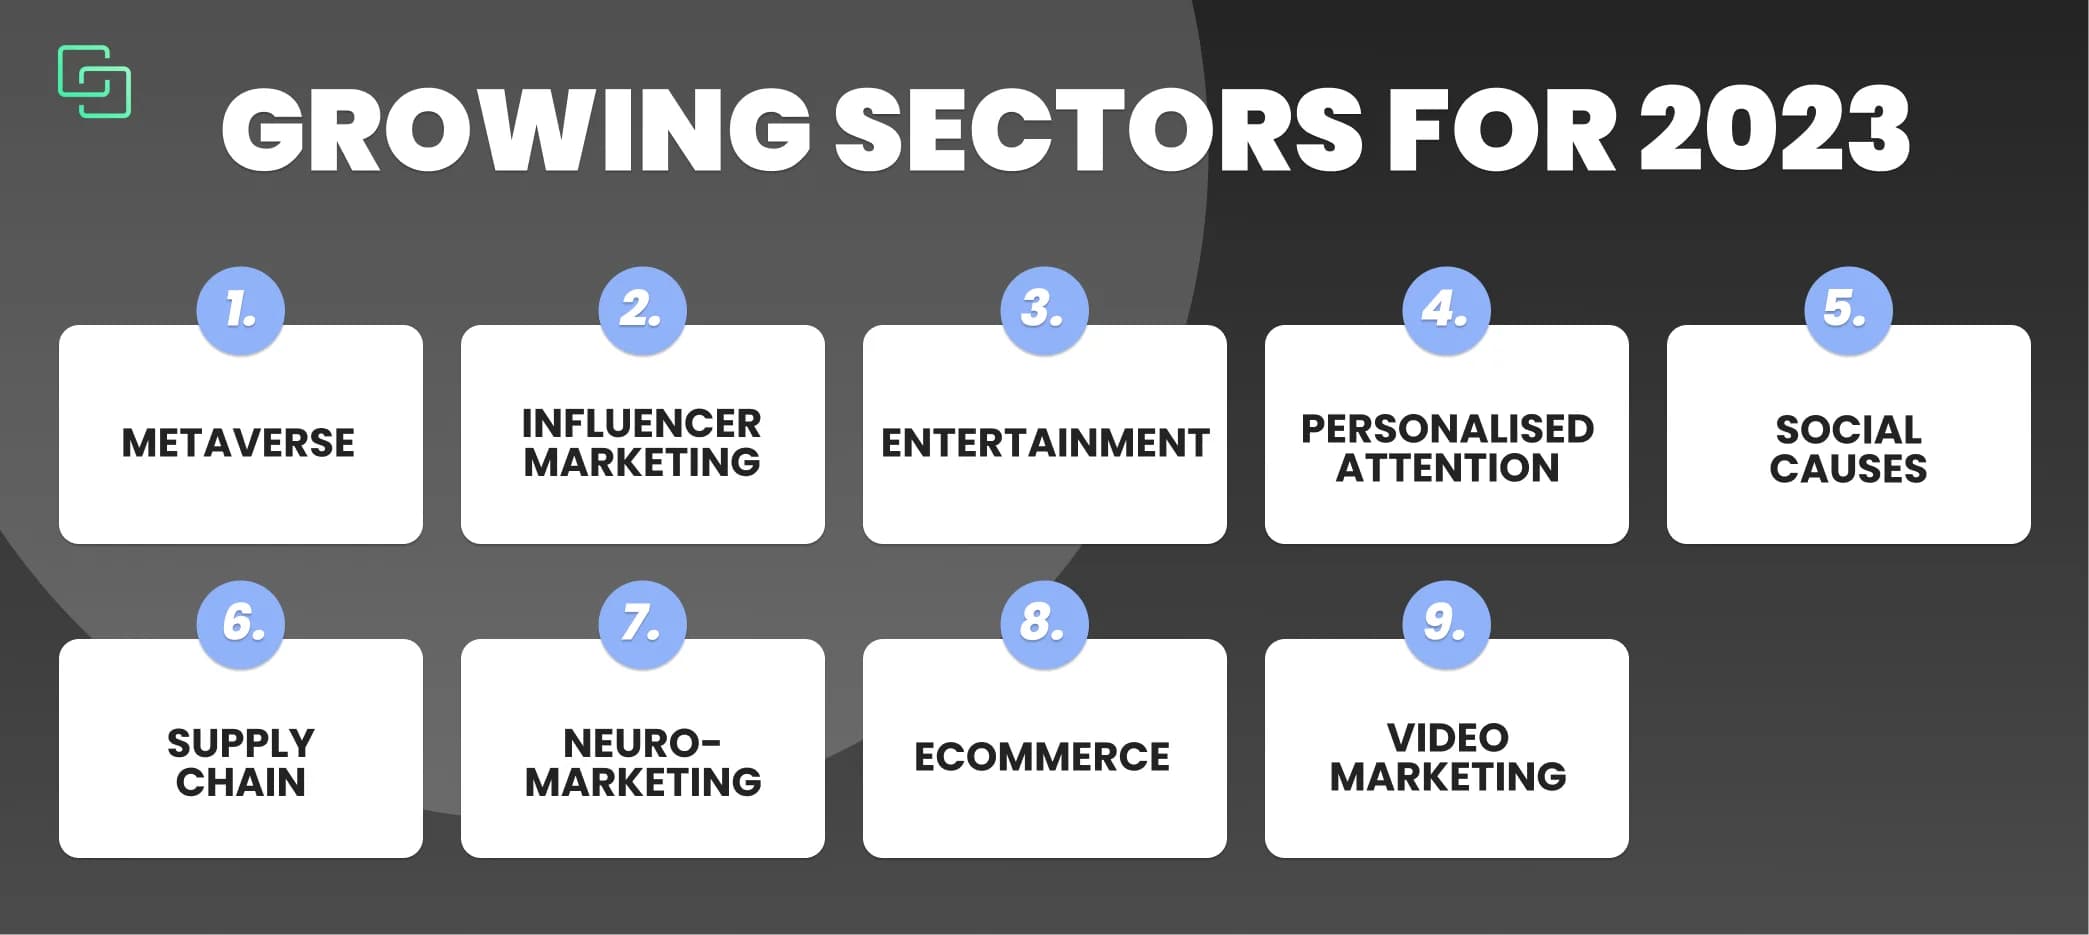 growing sectors